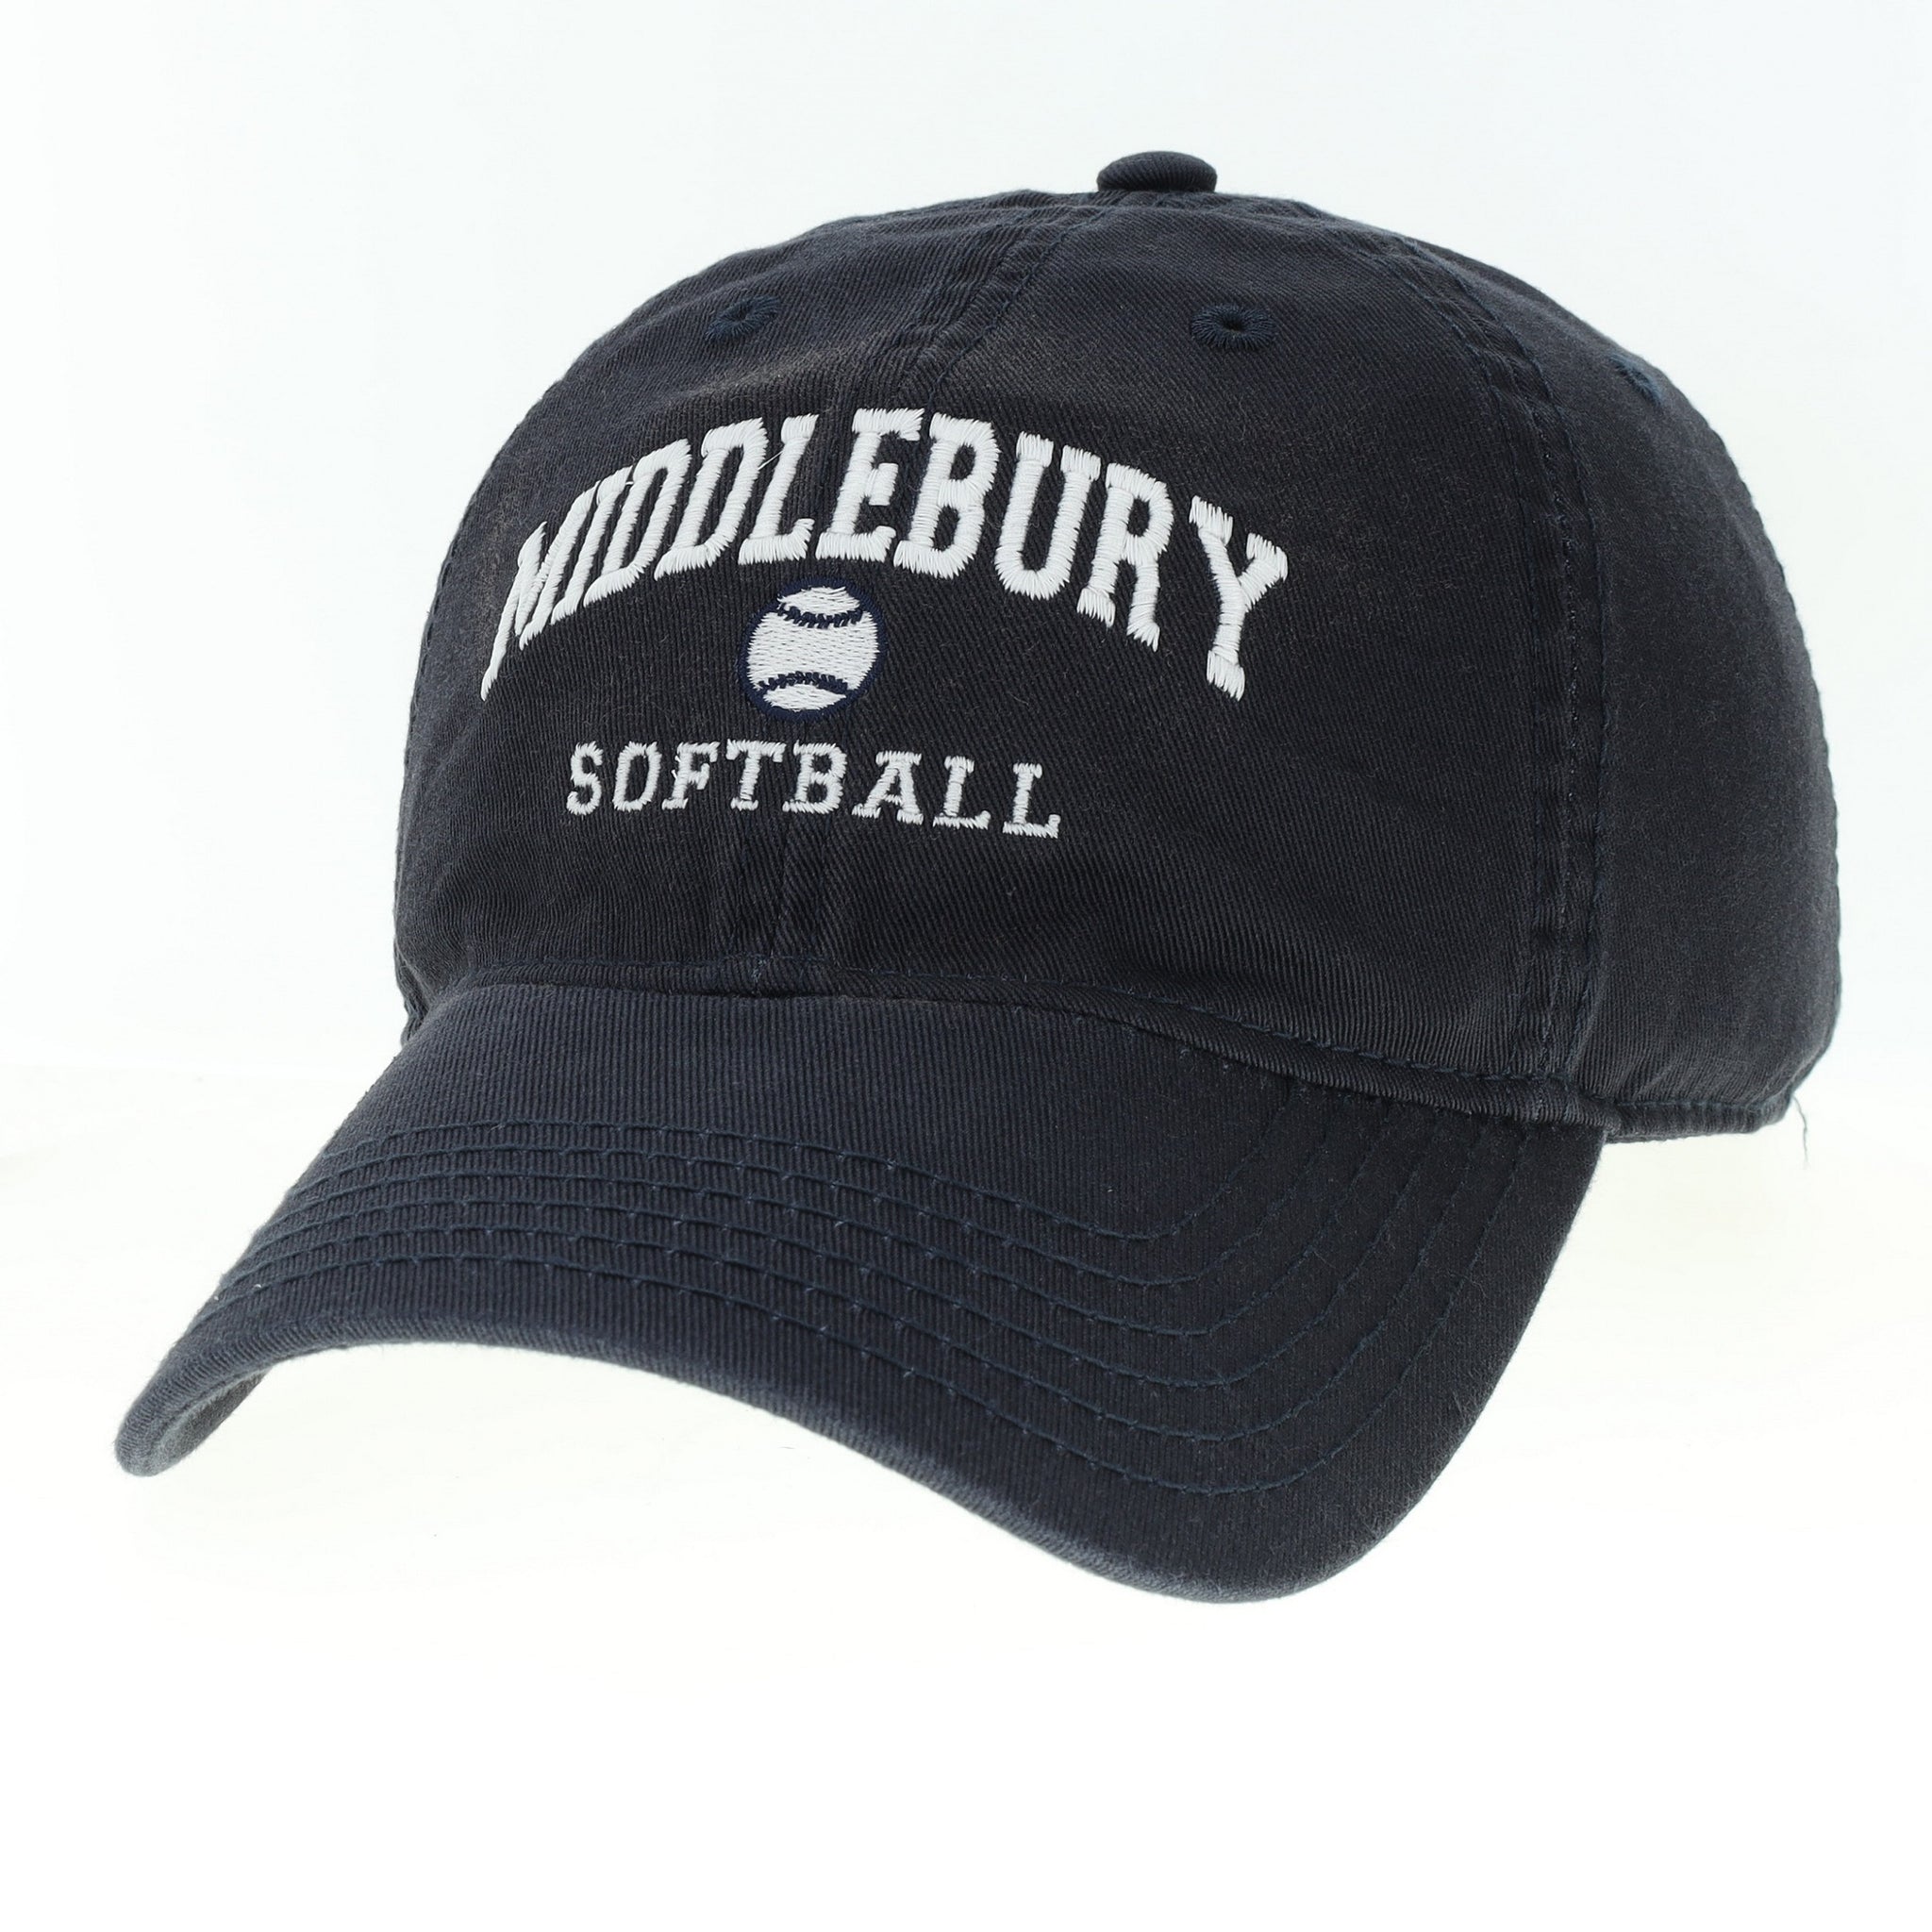 Middlebury Softball Hat (navy)